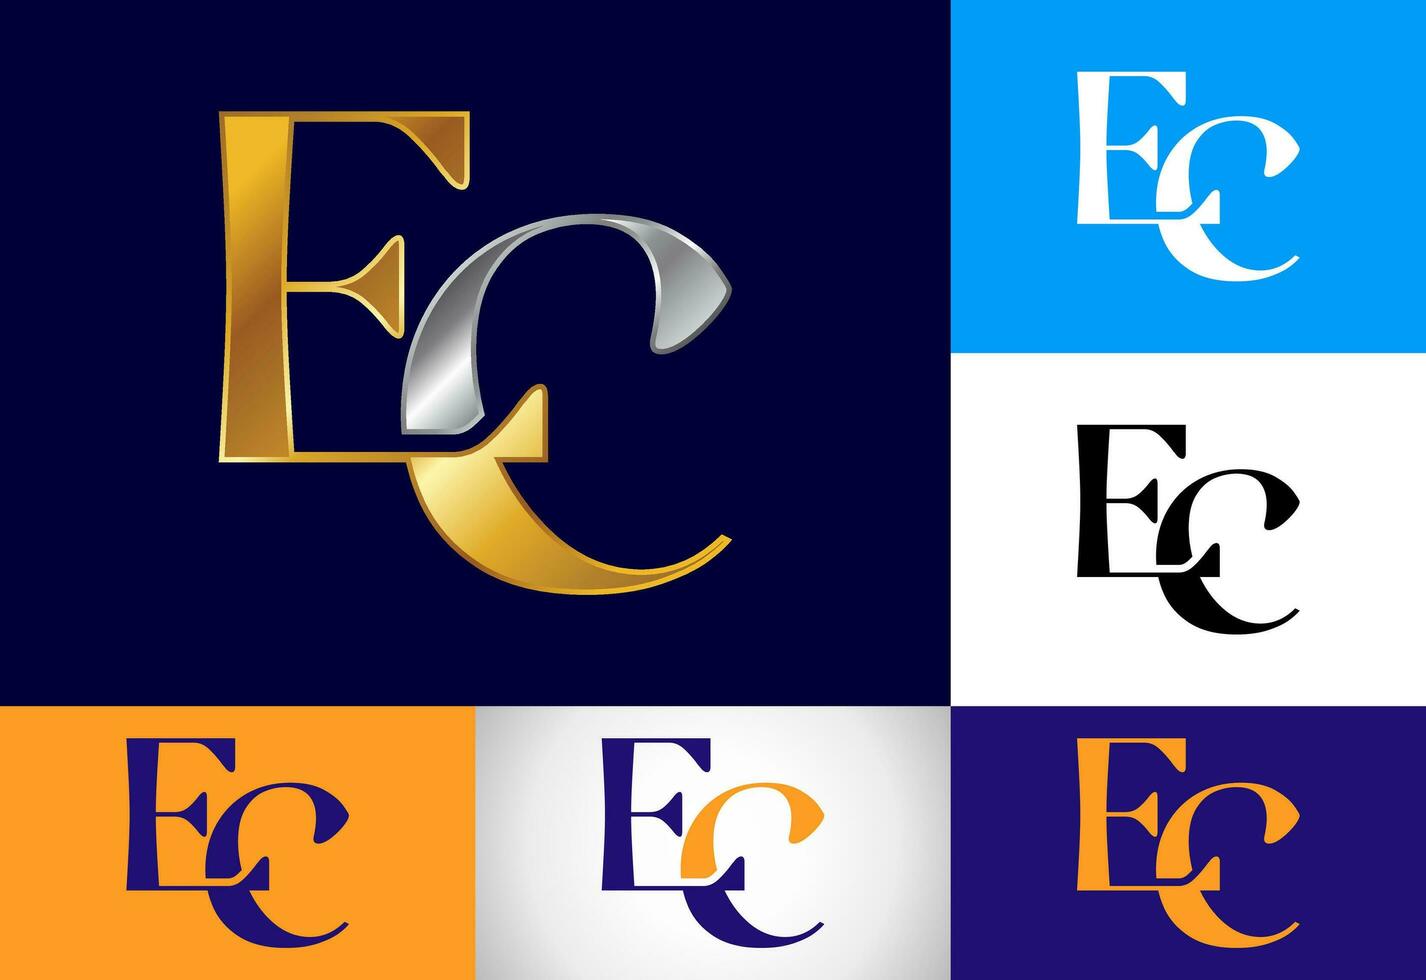 eerste brief e c logo ontwerp vector sjabloon. grafisch alfabet symbool voor zakelijke bedrijf identiteit